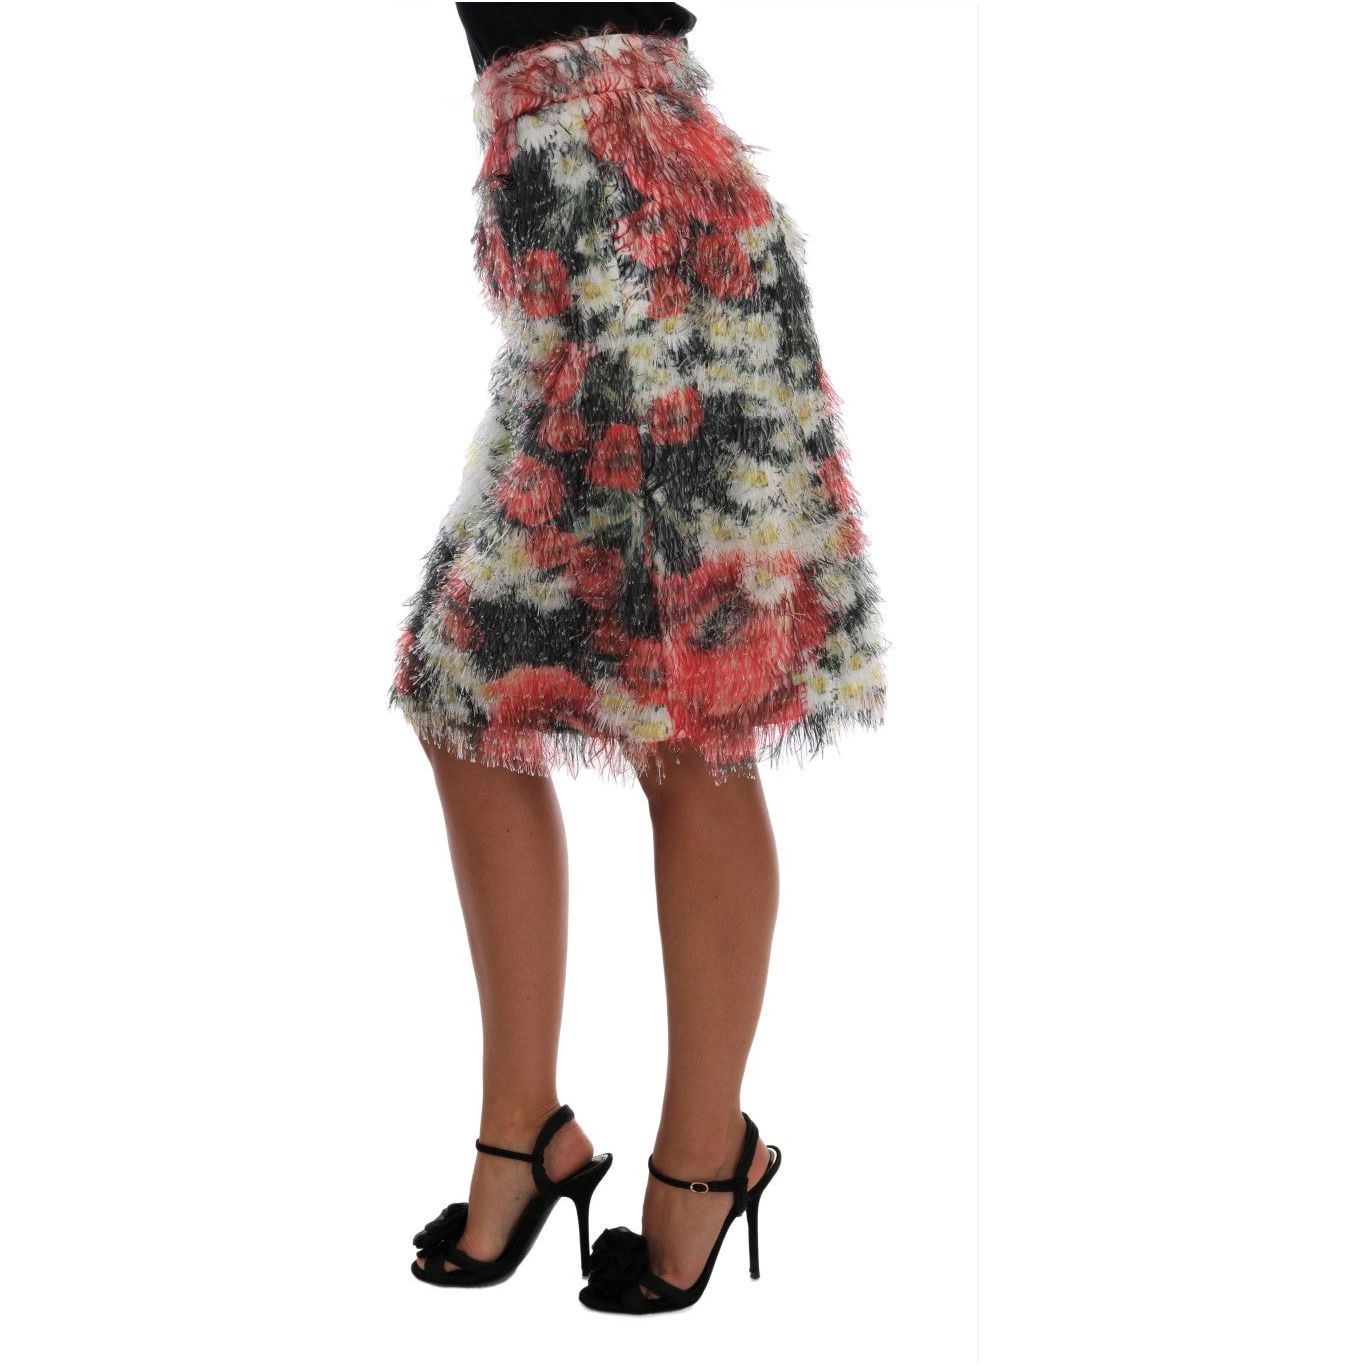 Dolce & Gabbana Floral Elegance Knee-Length Skirt floral-patterned-pencil-straight-skirt 464288-floral-patterned-pencil-straight-skirt-1.jpg